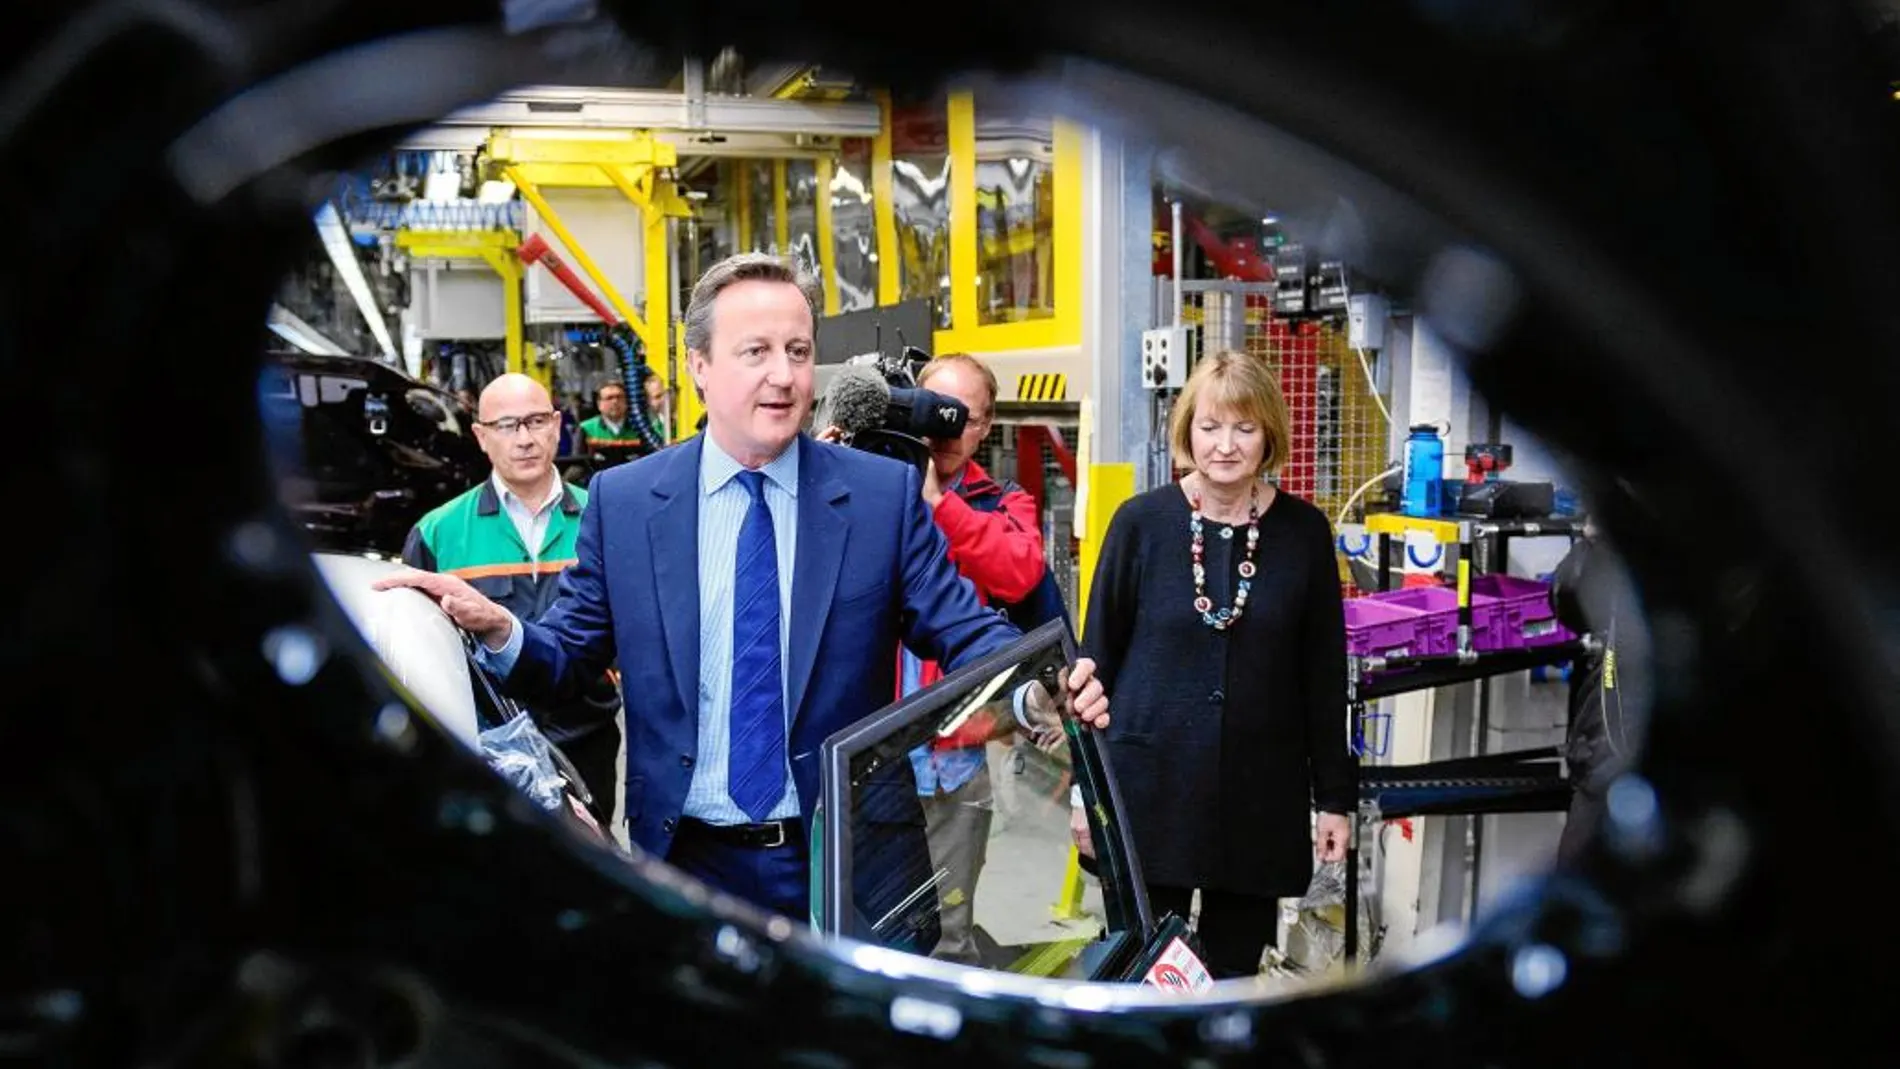 Cameron y Harriet Harman (diputada del Partido Laborista), durante una visita a la planta de BMW Mini en Oxford